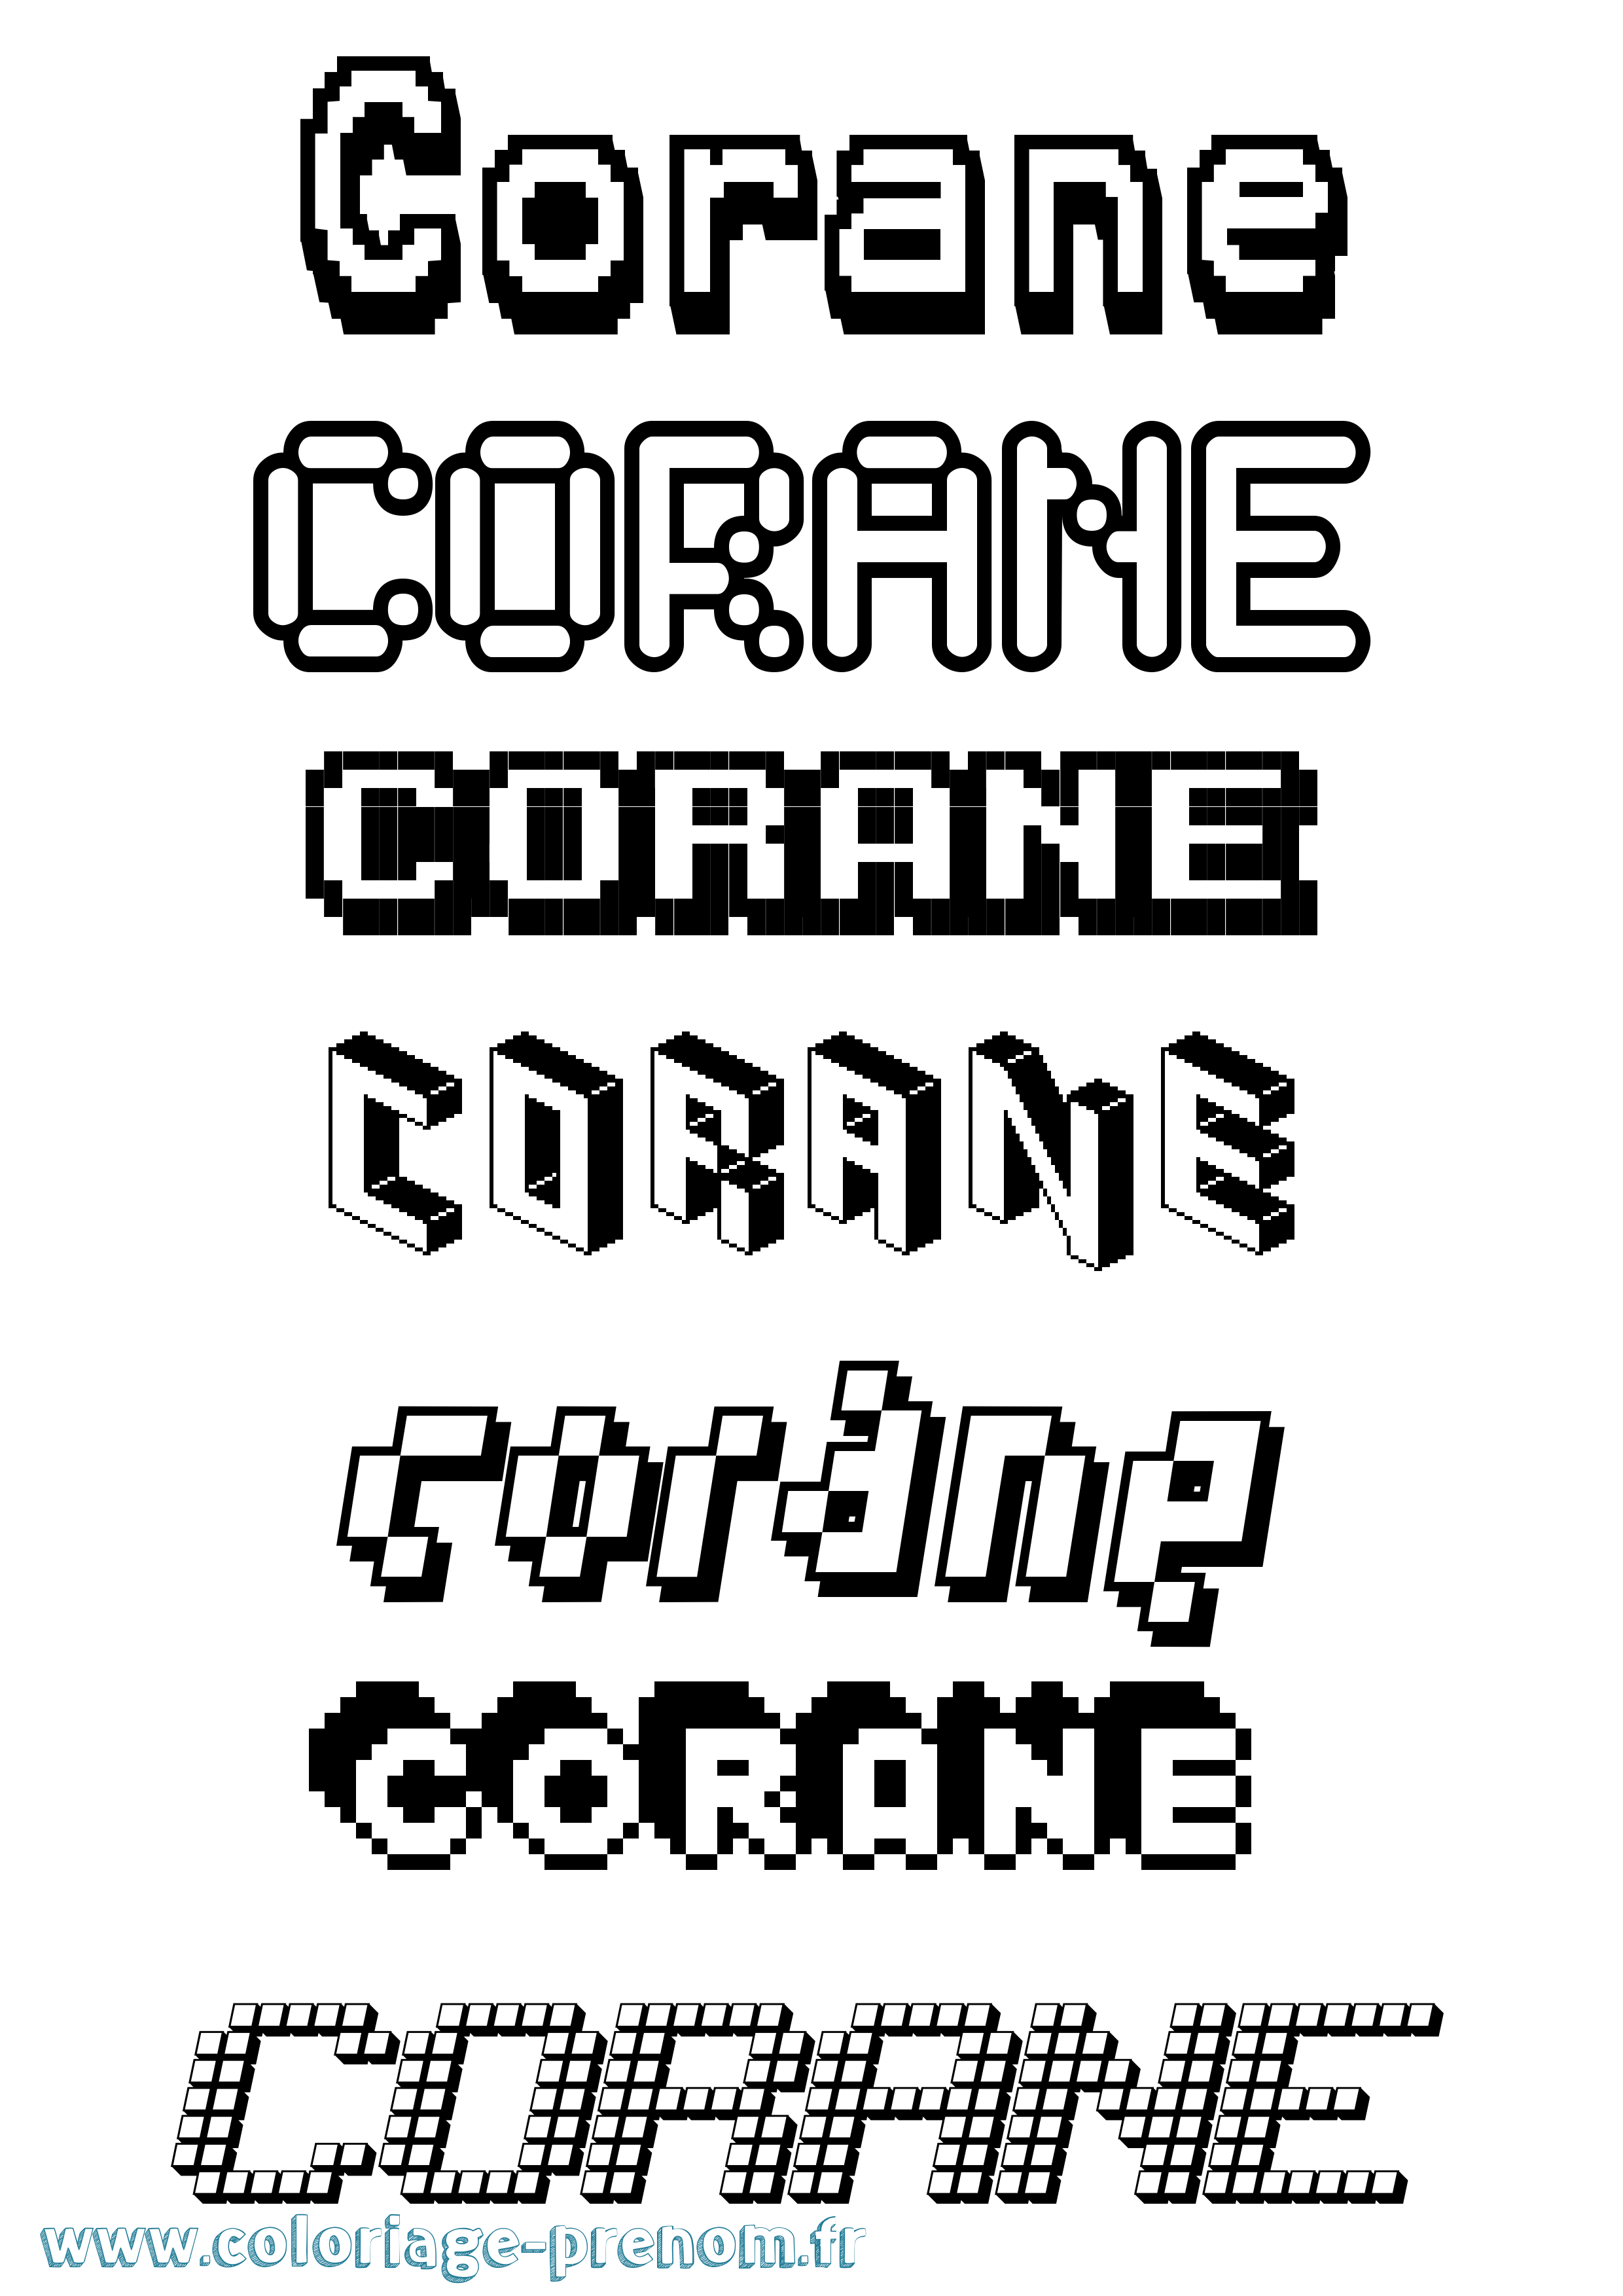 Coloriage prénom Corane Pixel